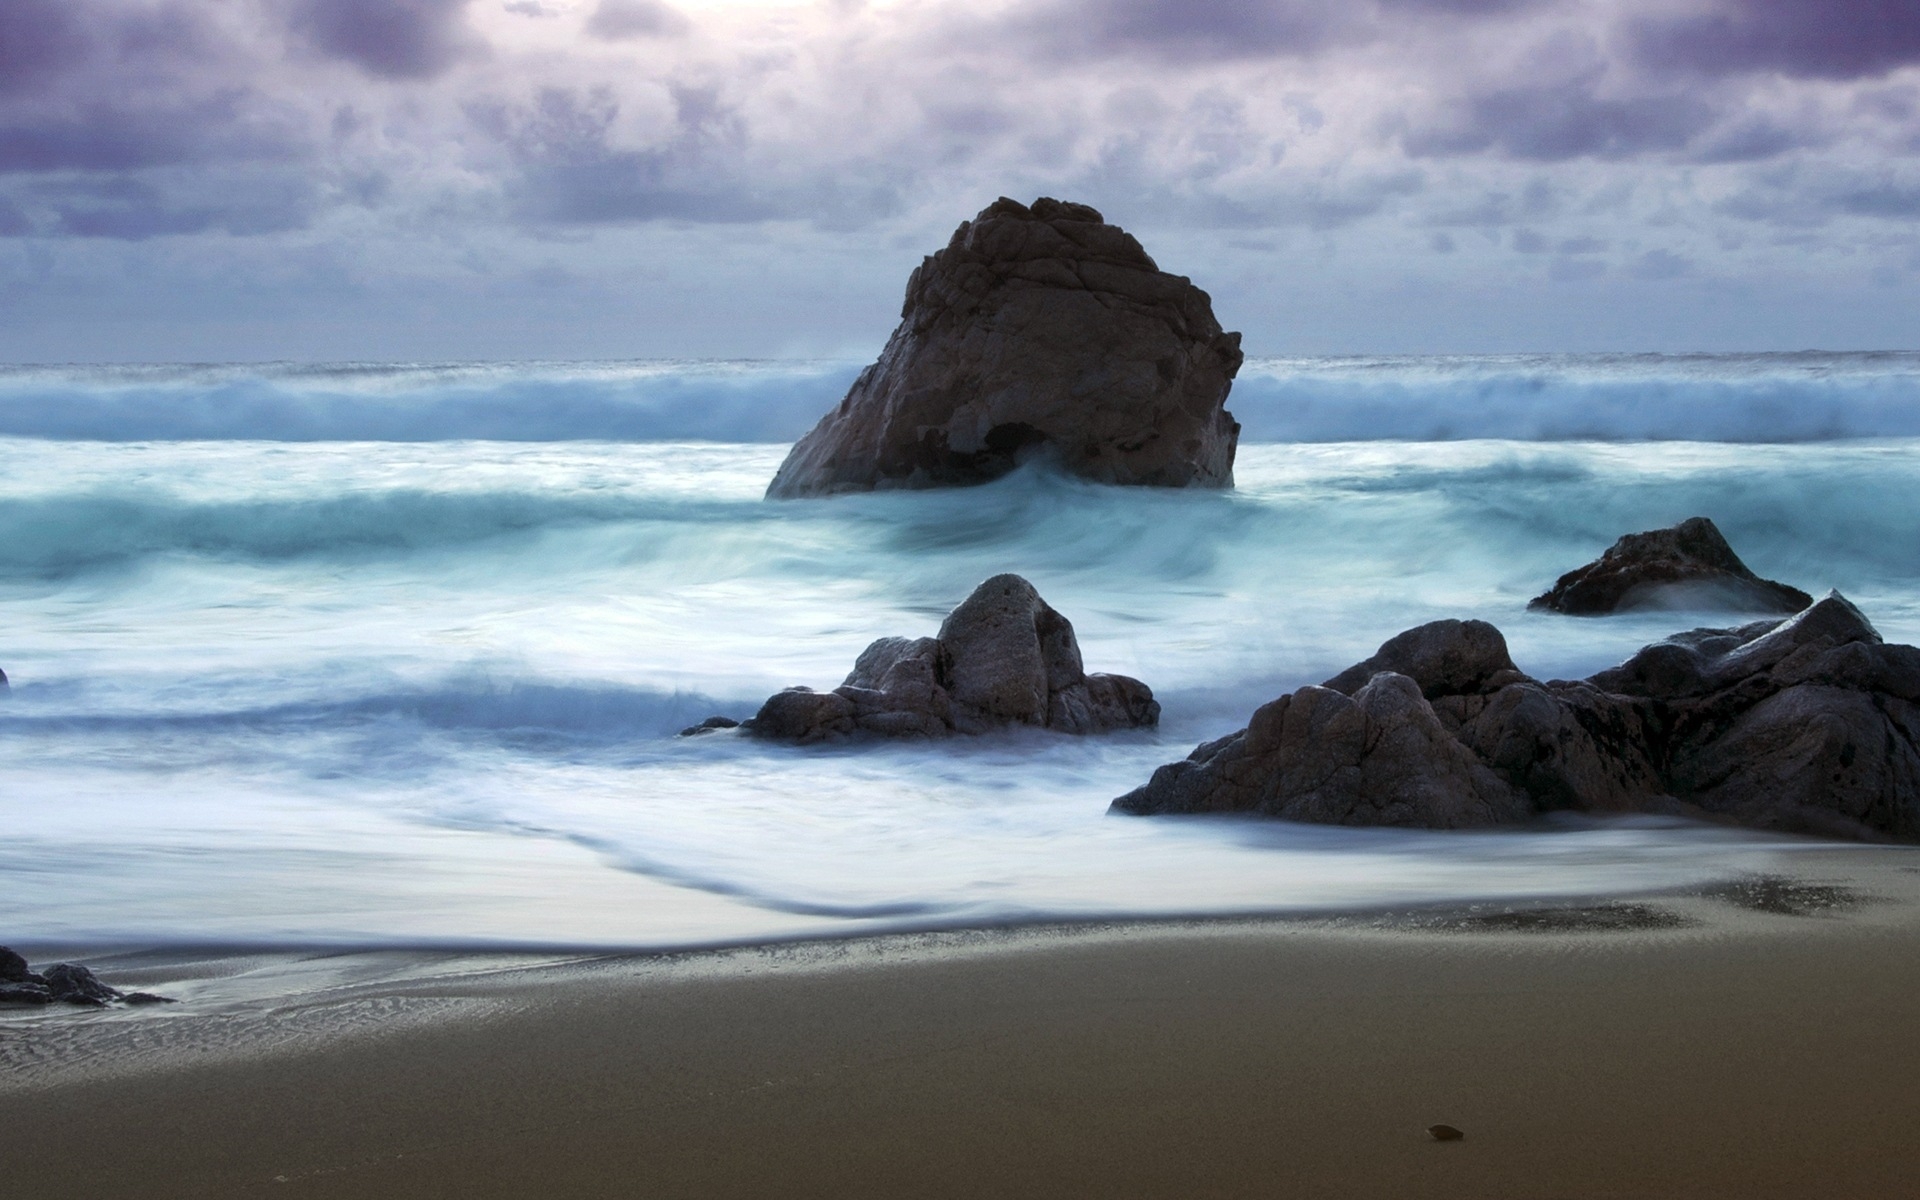 Картинки Волны, море, камни, буря, побережье, песок, пляж фото и обои на рабочий стол